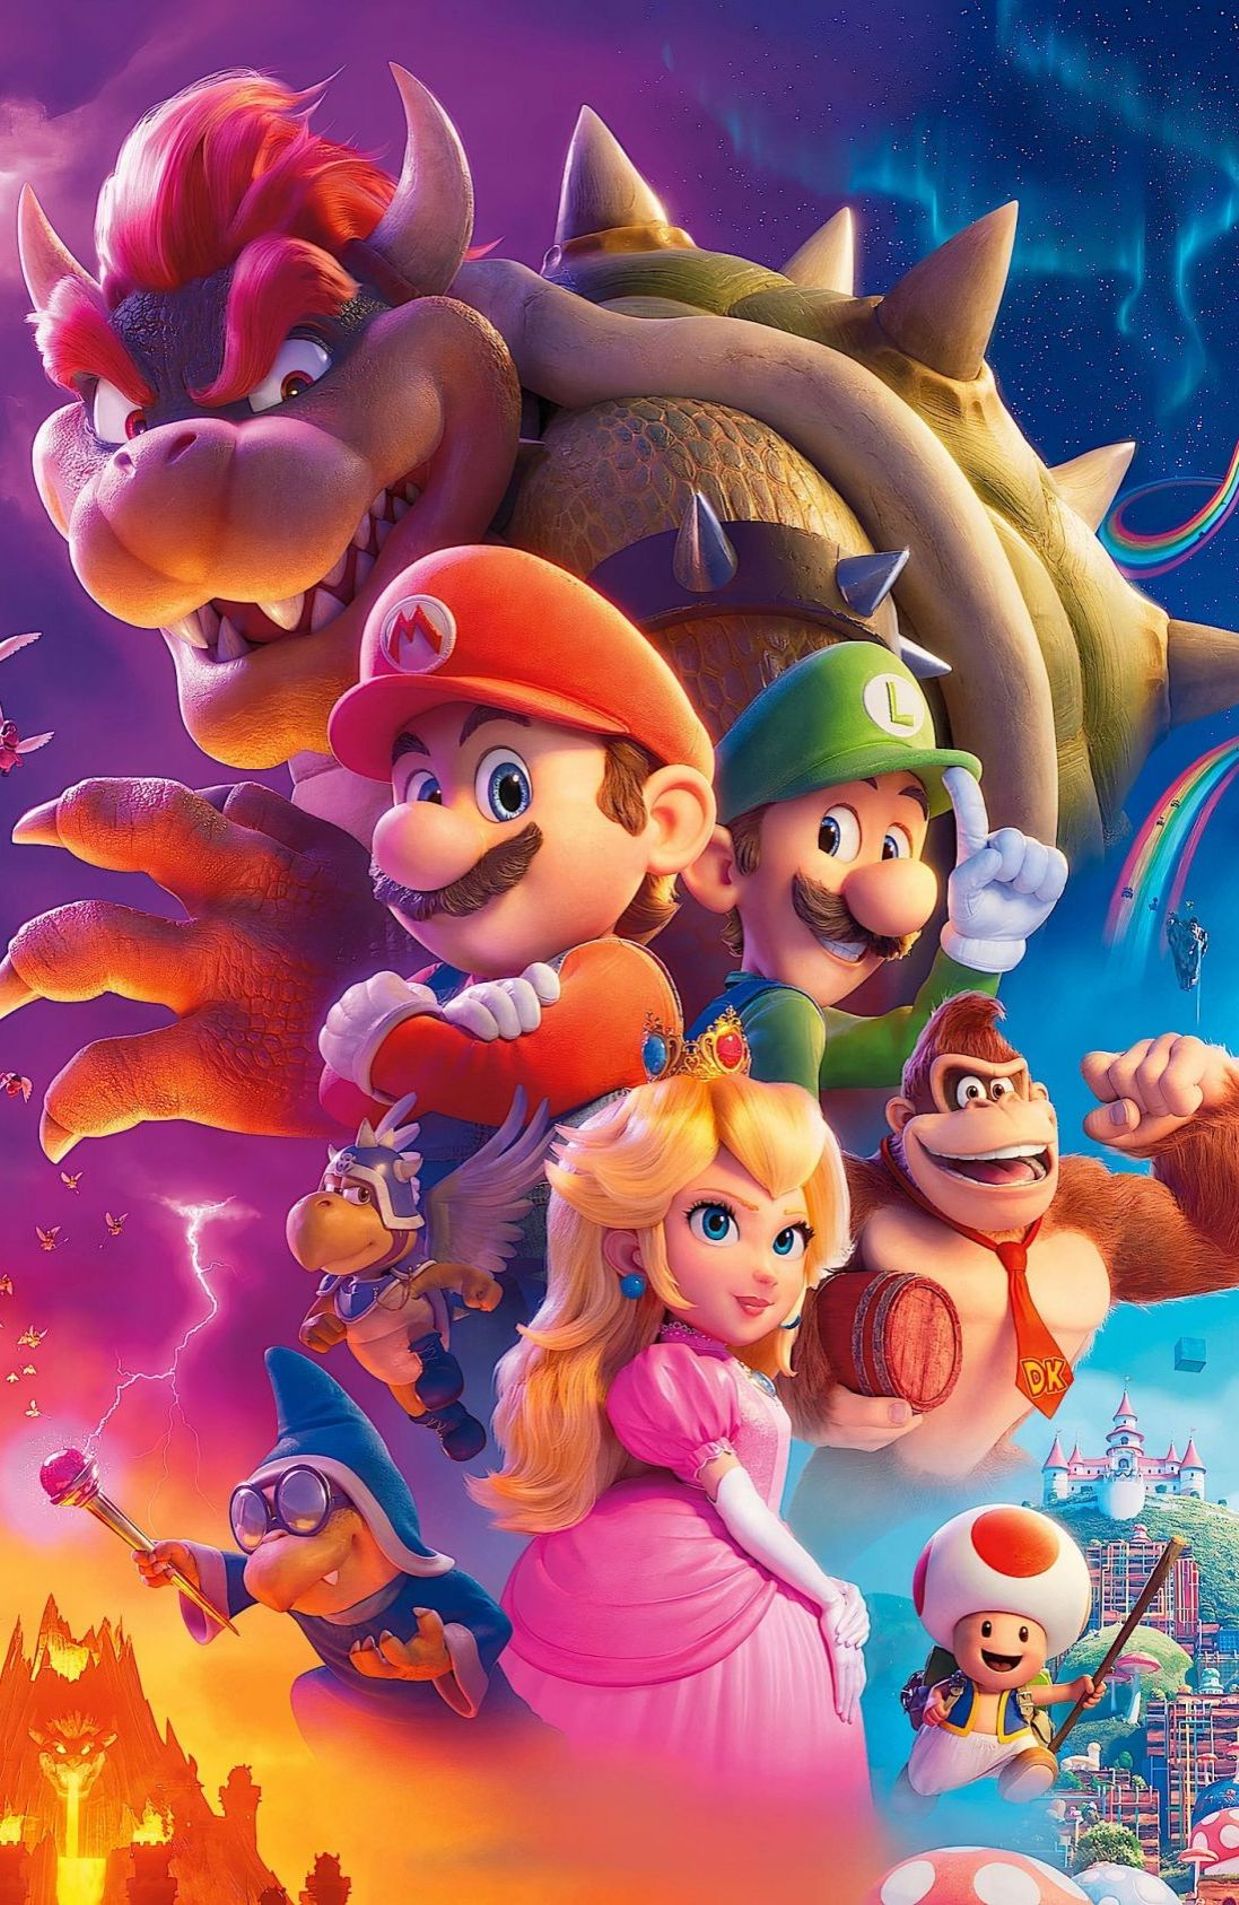 Super Mario Bros, le film: le héros du jeu vidéo débarque sur